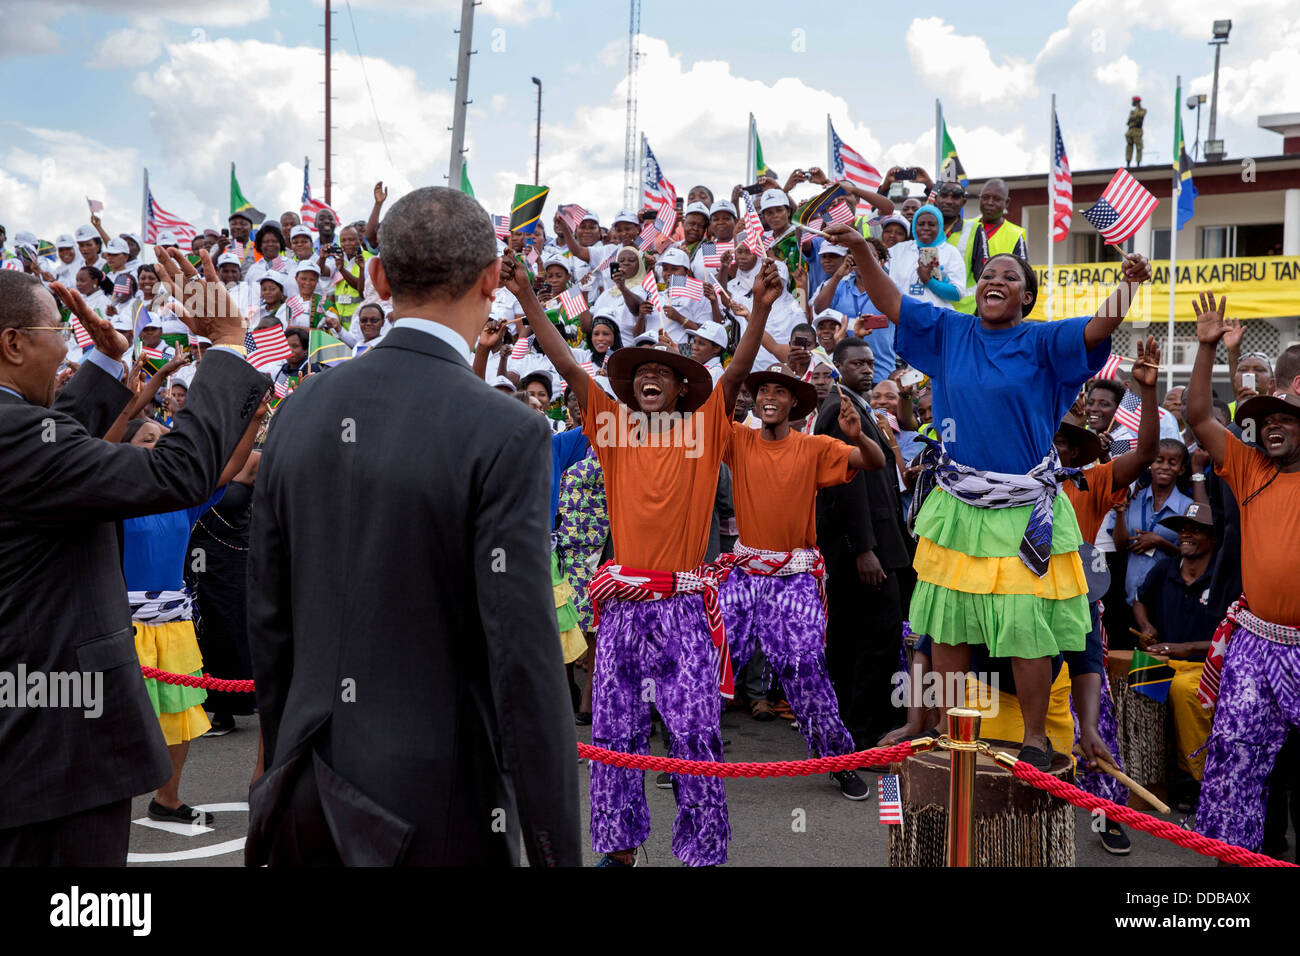 US-Präsident Barack Obama Uhren Darsteller auf dem Rollfeld vor der Abfahrt Flughafen Julius Nyerre 2. Juli 2013 in Dar Es Salaam, Tansania. Tansanischen Präsidenten Jakaya Kikwete Wellen auf der linken Seite. Stockfoto